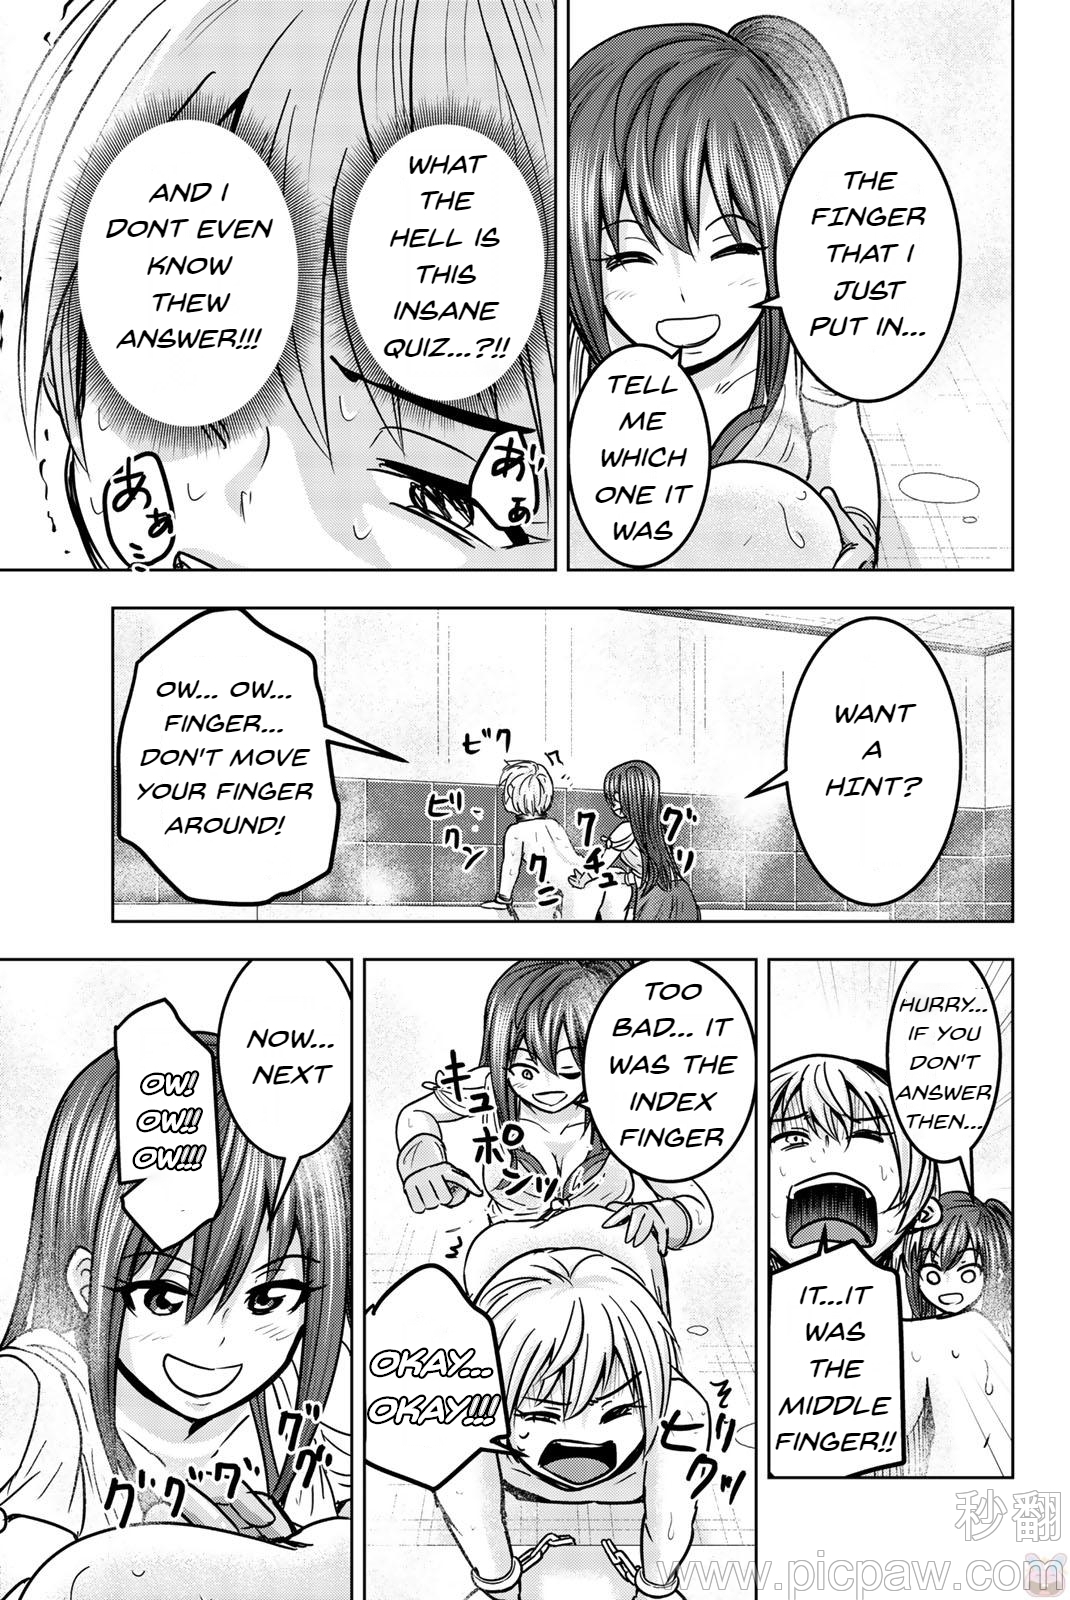 Mina-sama no Omocha desu - Chapter 20 Page 7